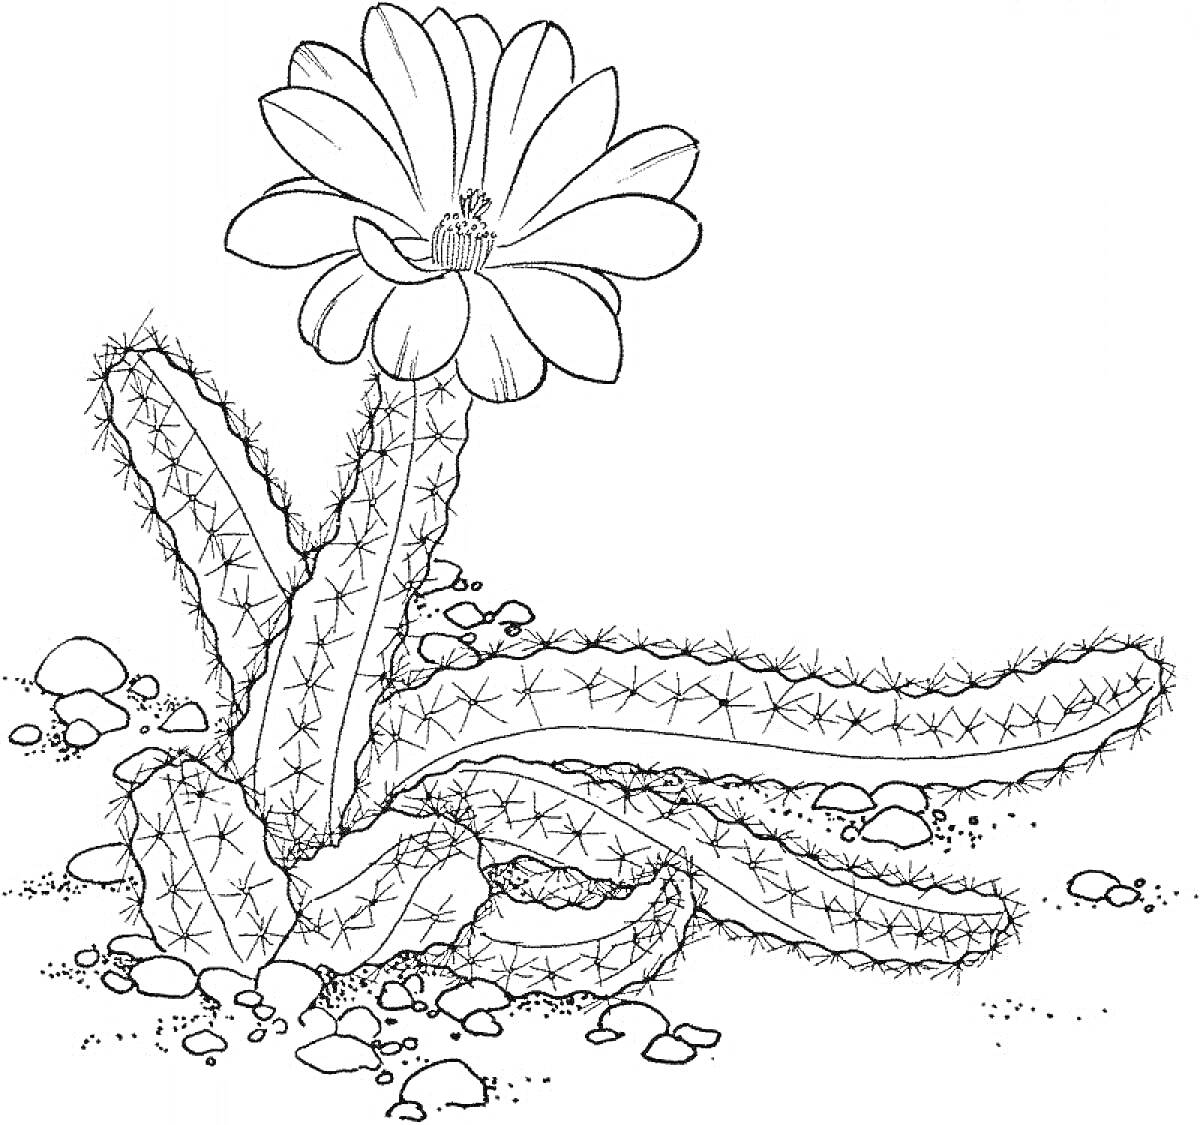  Кактус с цветком на песчаной почве с галькой